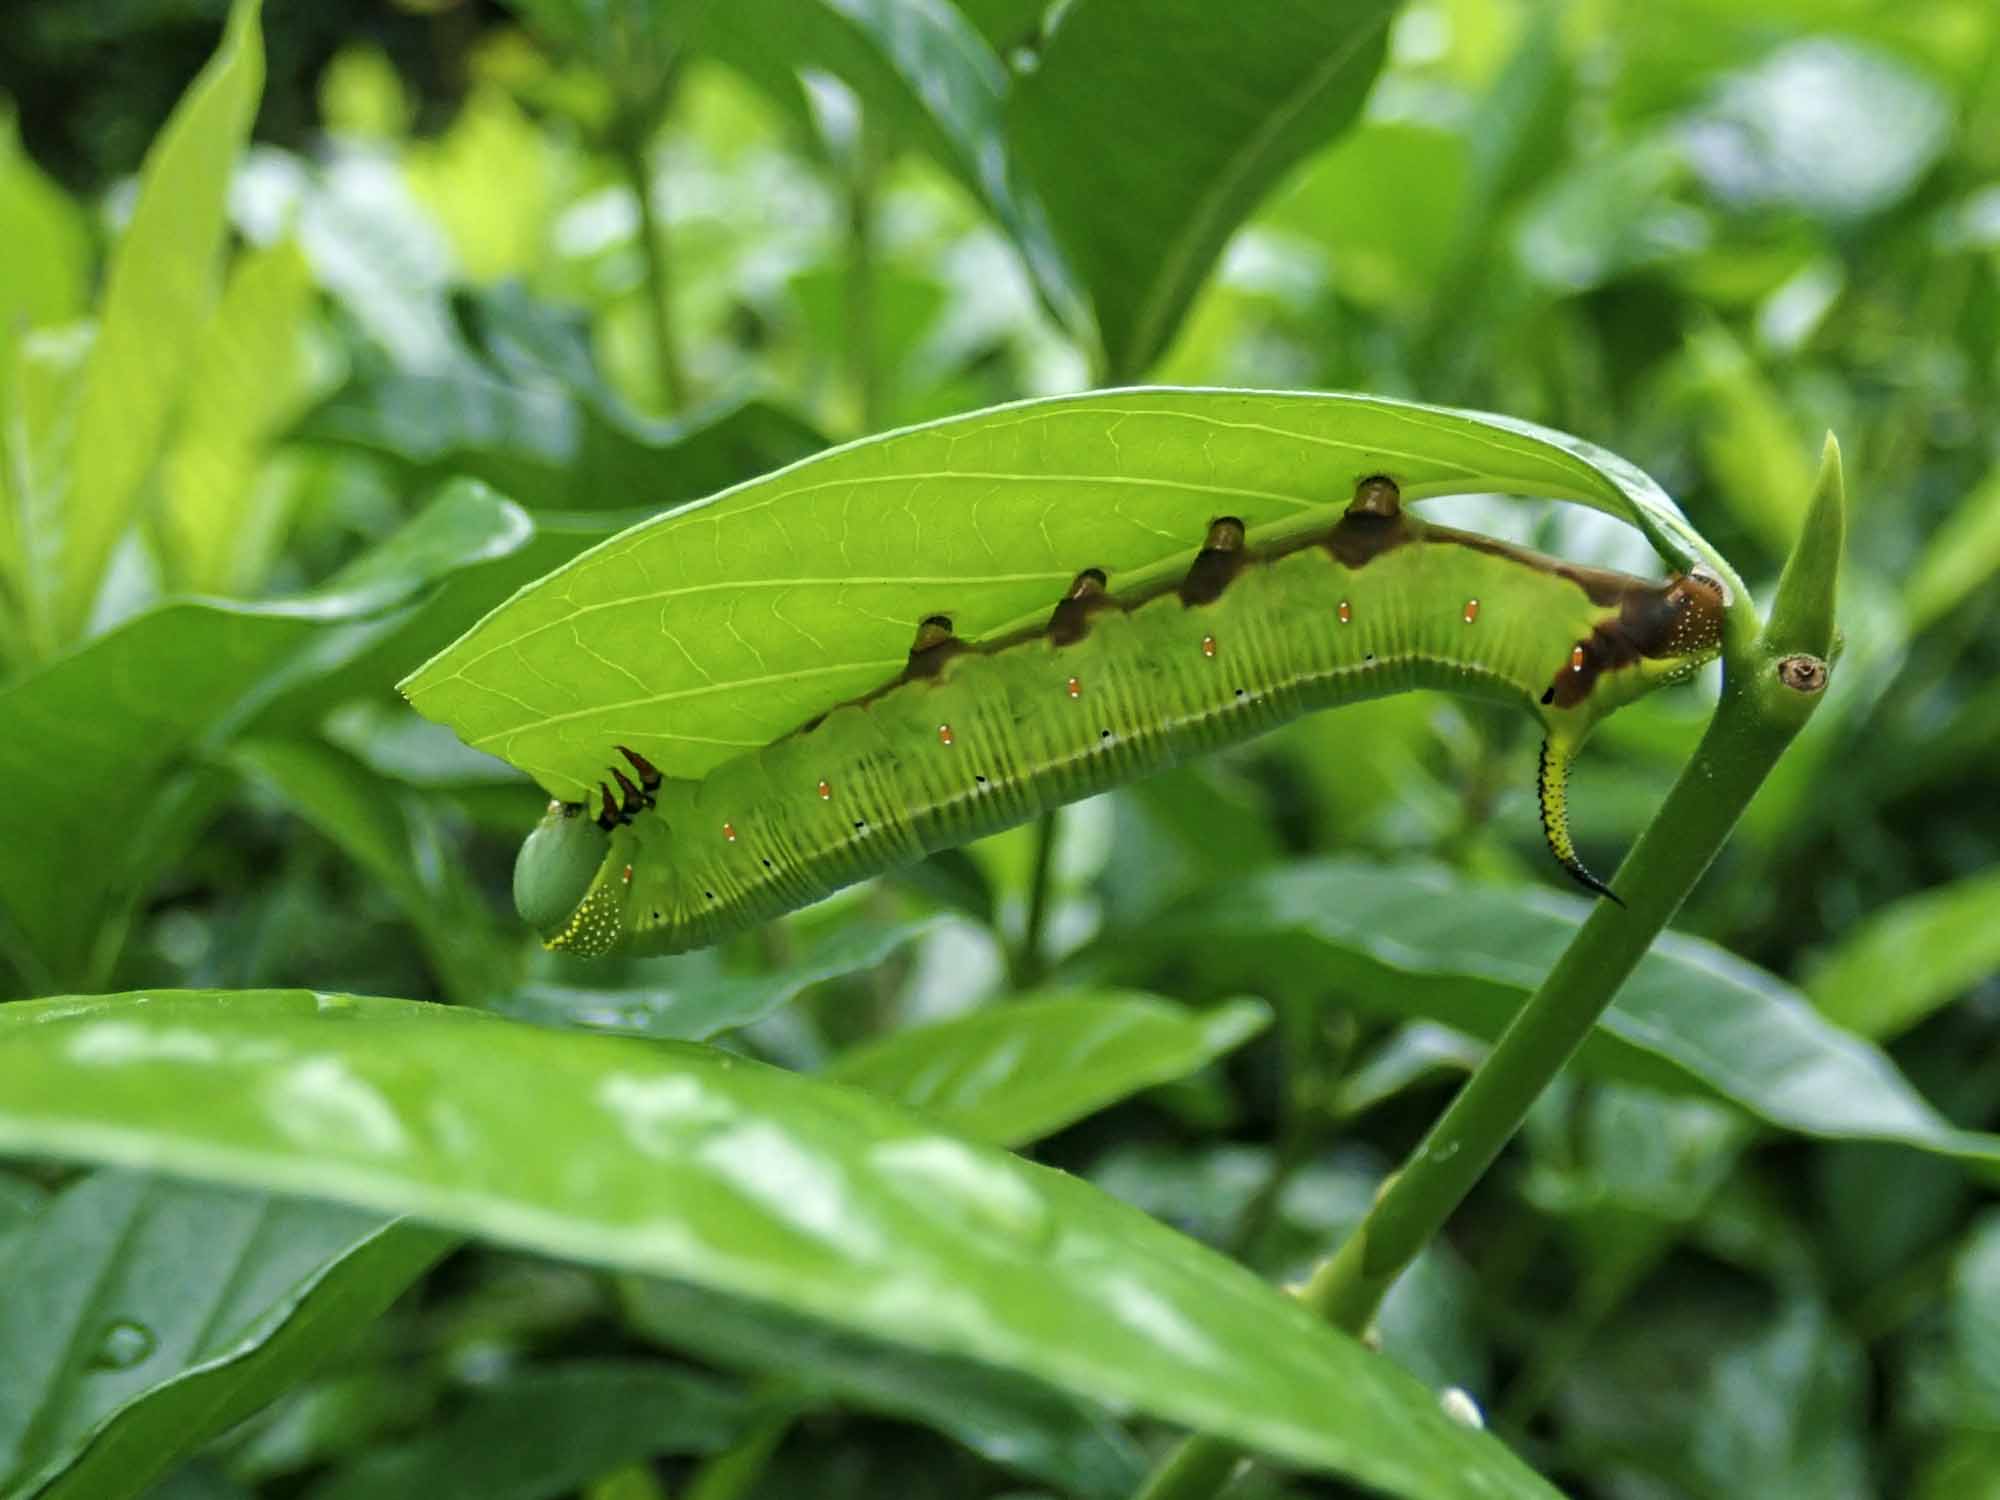 オオスカシバの特徴や成長 卵 幼虫 蛹 の様子も写真で紹介 虫の写真と生態なら昆虫写真図鑑 ムシミル